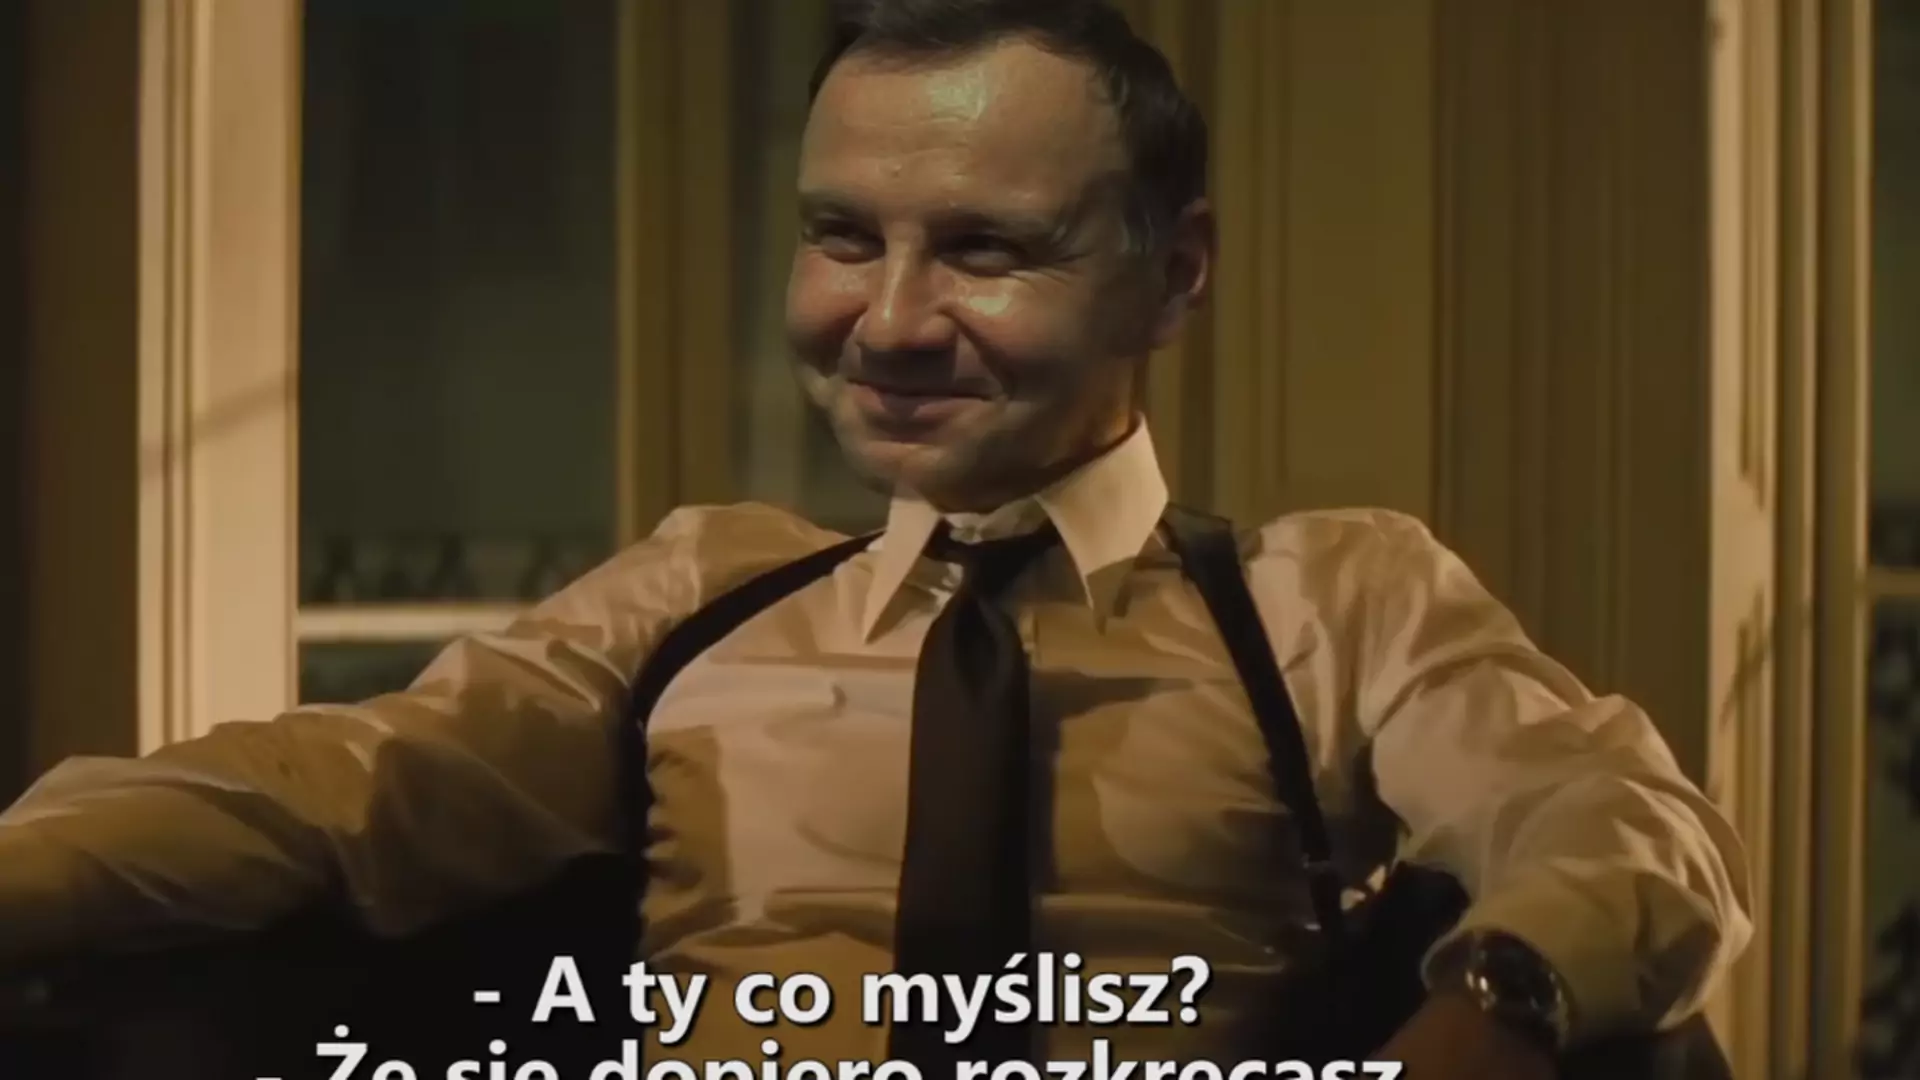 Andrzej Duda jako James Bond. Przeróbka "Spectre" zabawnie podsumowuje polską rzeczywistość